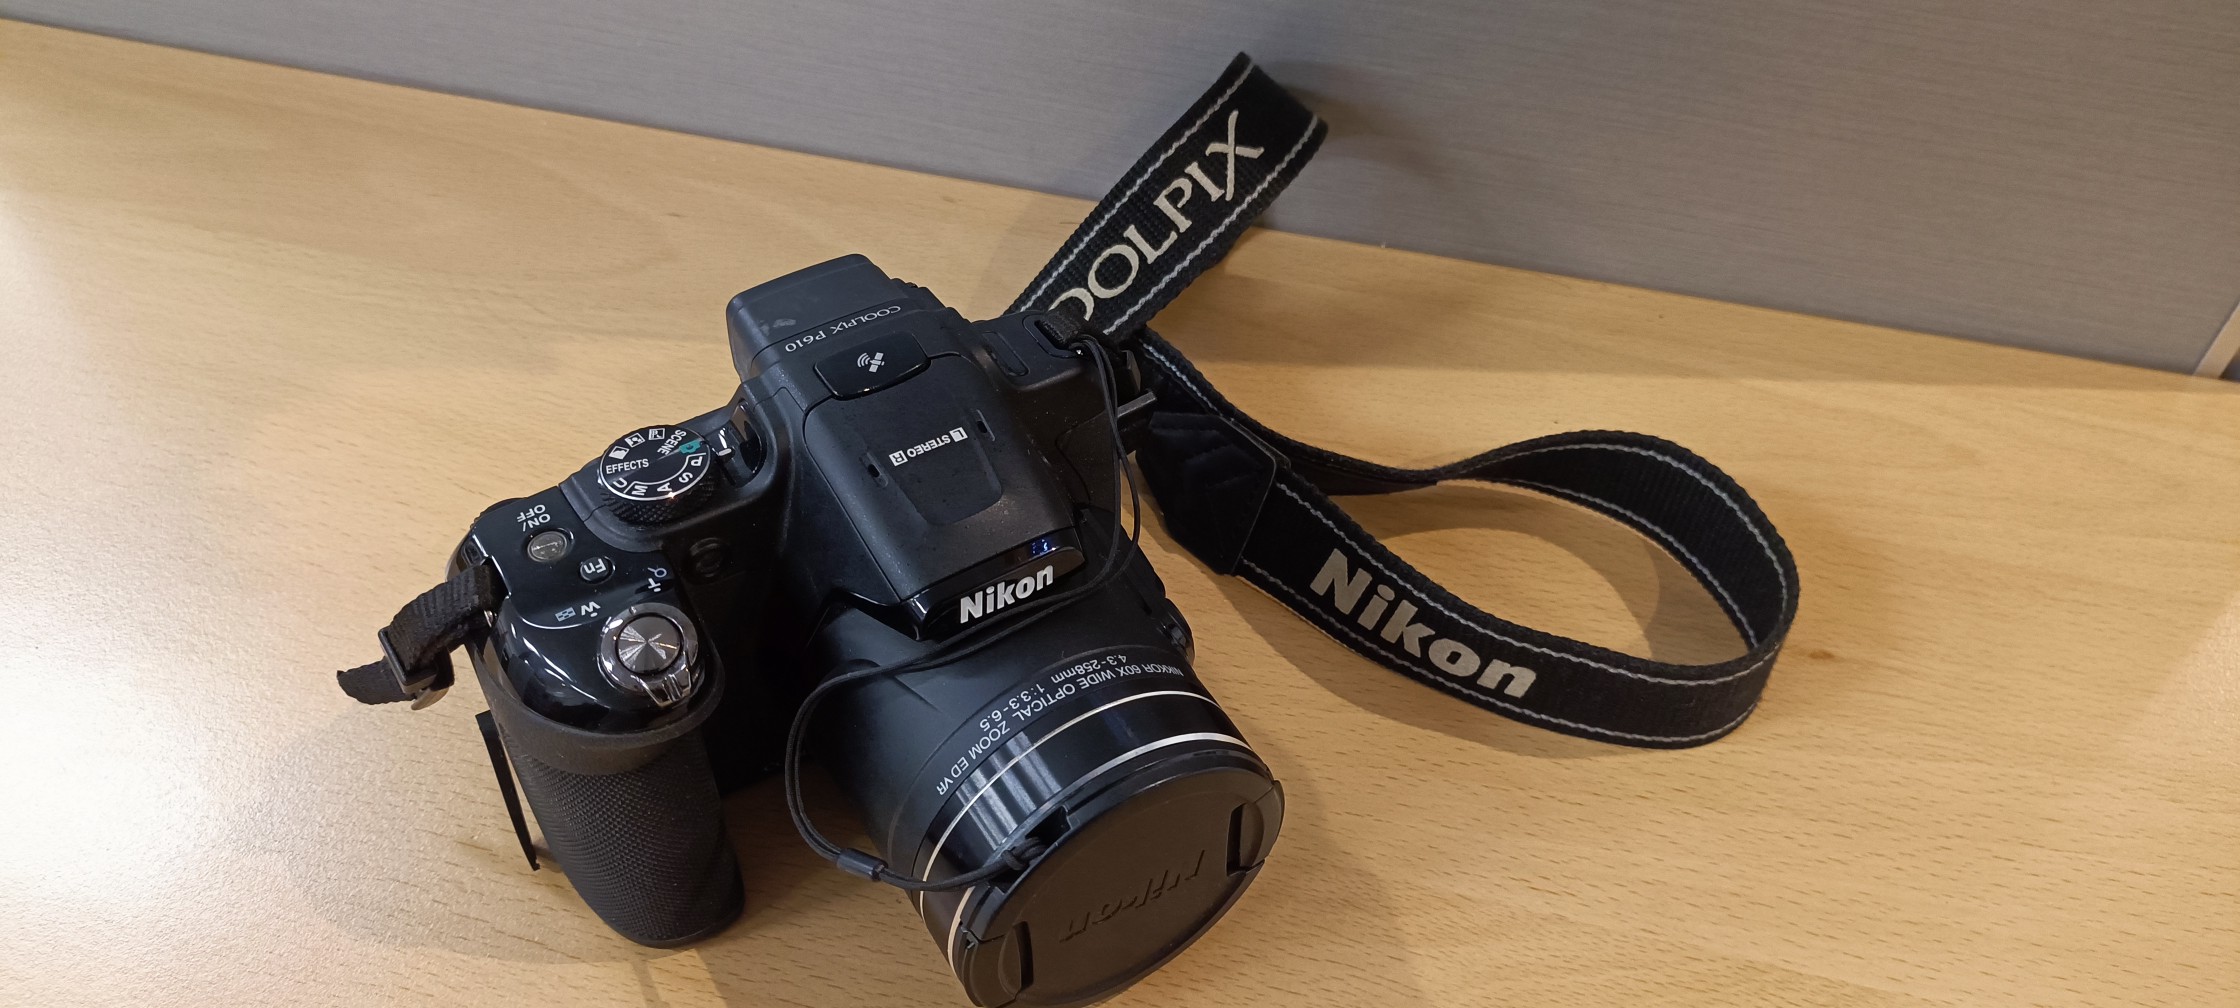 camaras y audio - Nikon Coolpix P610 63x zoom 1440 mm.  Excelentes condiciones 0